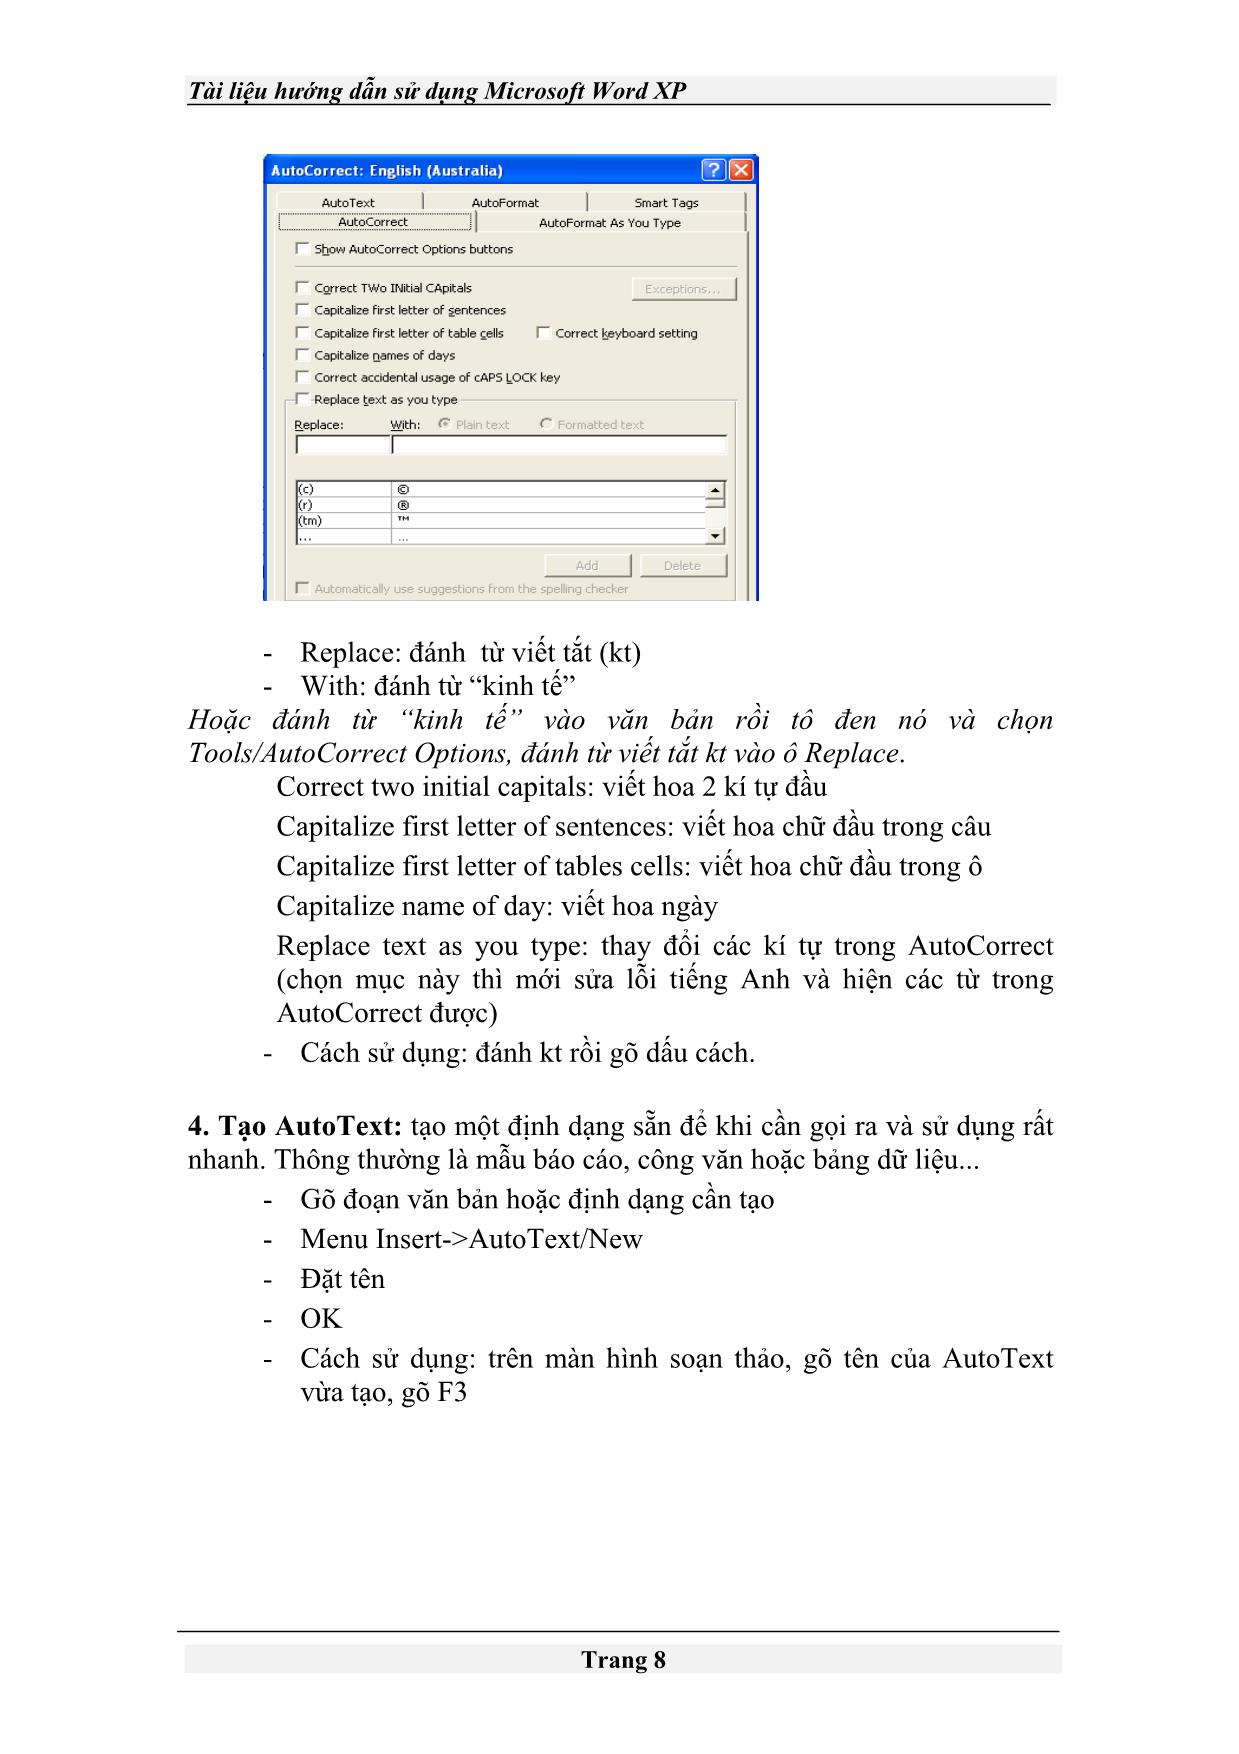 Tài liệu Hướng dẫn sử dụng Microsoft Word XP trang 8